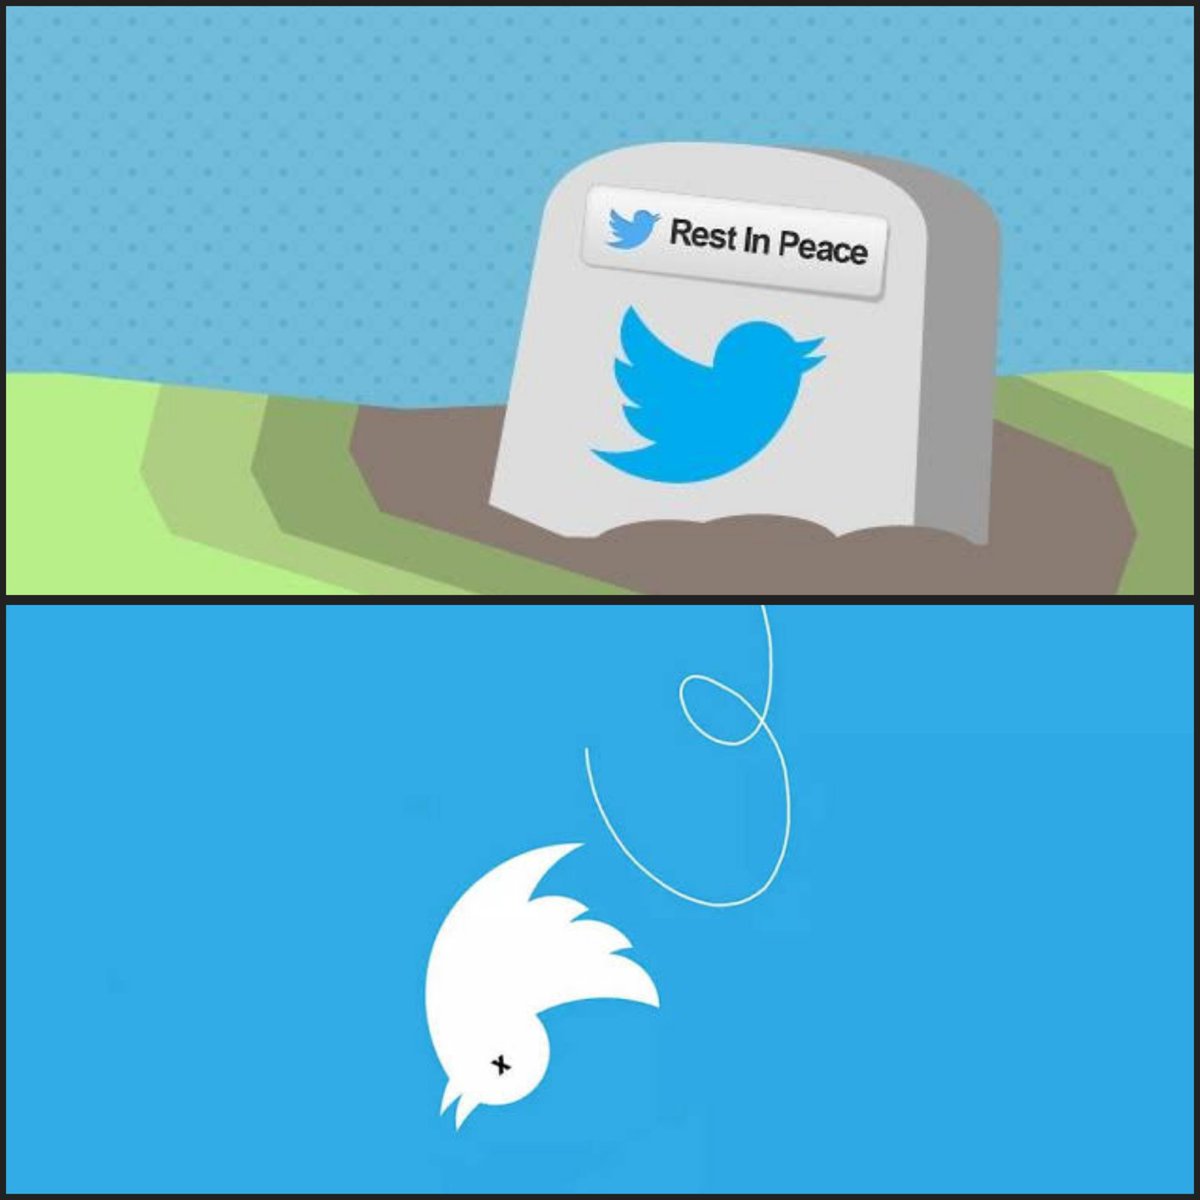 🚨| OFICIALMENTE HOY ES NUESTRO ÚLTIMO DÍA EN TWITTER

Durante más de una década el pájaro azul de Twitter () ha simbolizado perfectamente la naturaleza de un tweet (pío/piar en español): transmitir información de manera rápida y corta como el sonido de un pájaro. 

Pero hoy